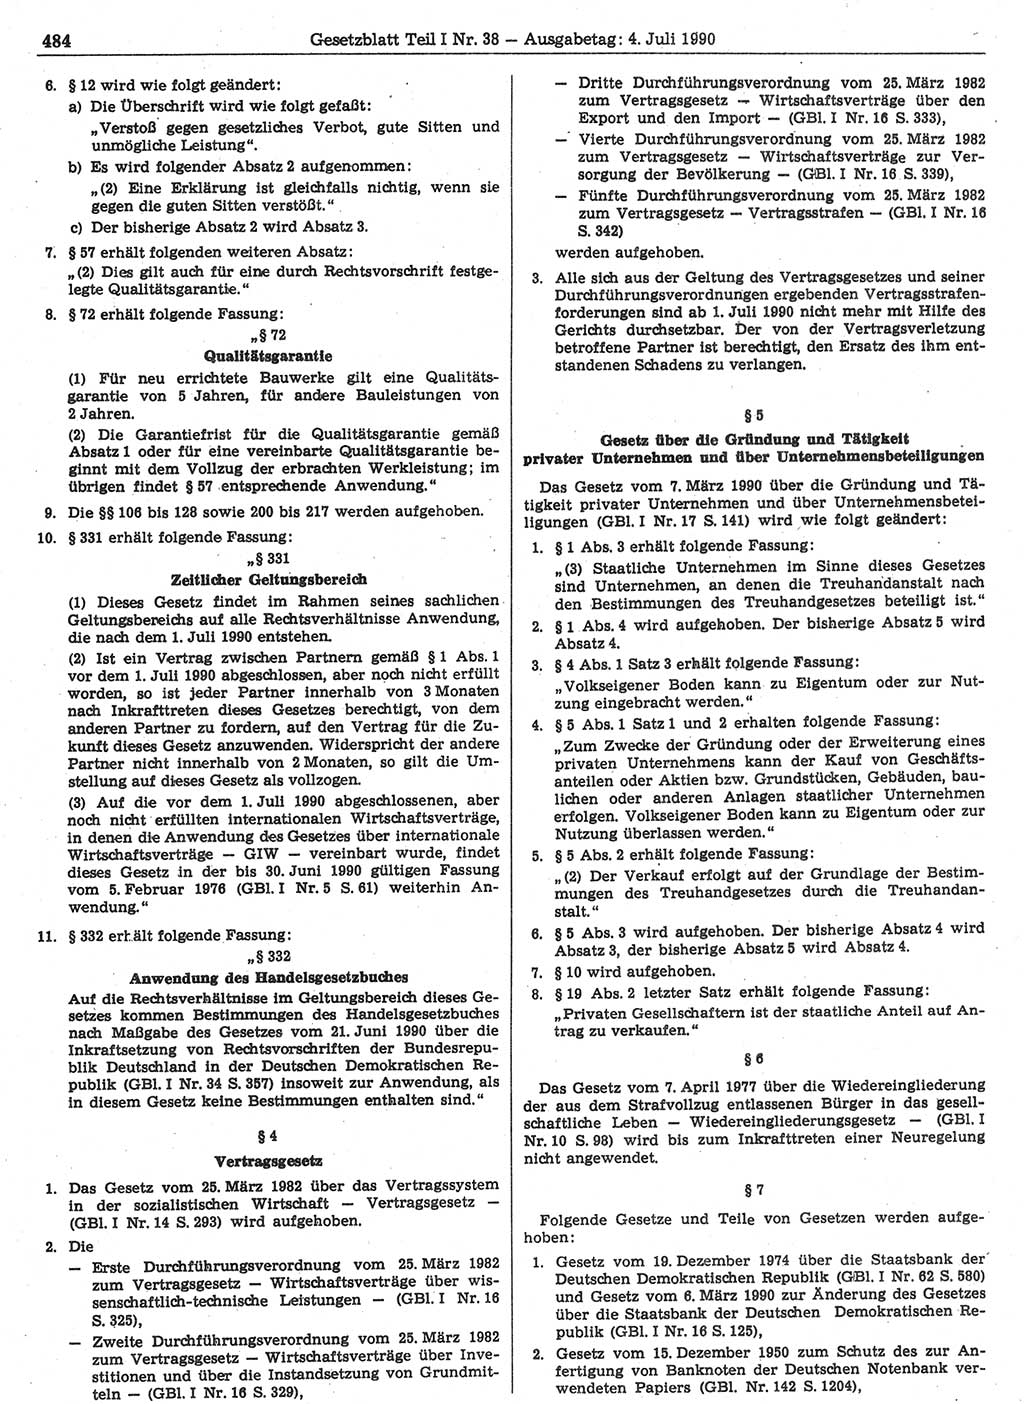 Gesetzblatt (GBl.) der Deutschen Demokratischen Republik (DDR) Teil Ⅰ 1990, Seite 484 (GBl. DDR Ⅰ 1990, S. 484)